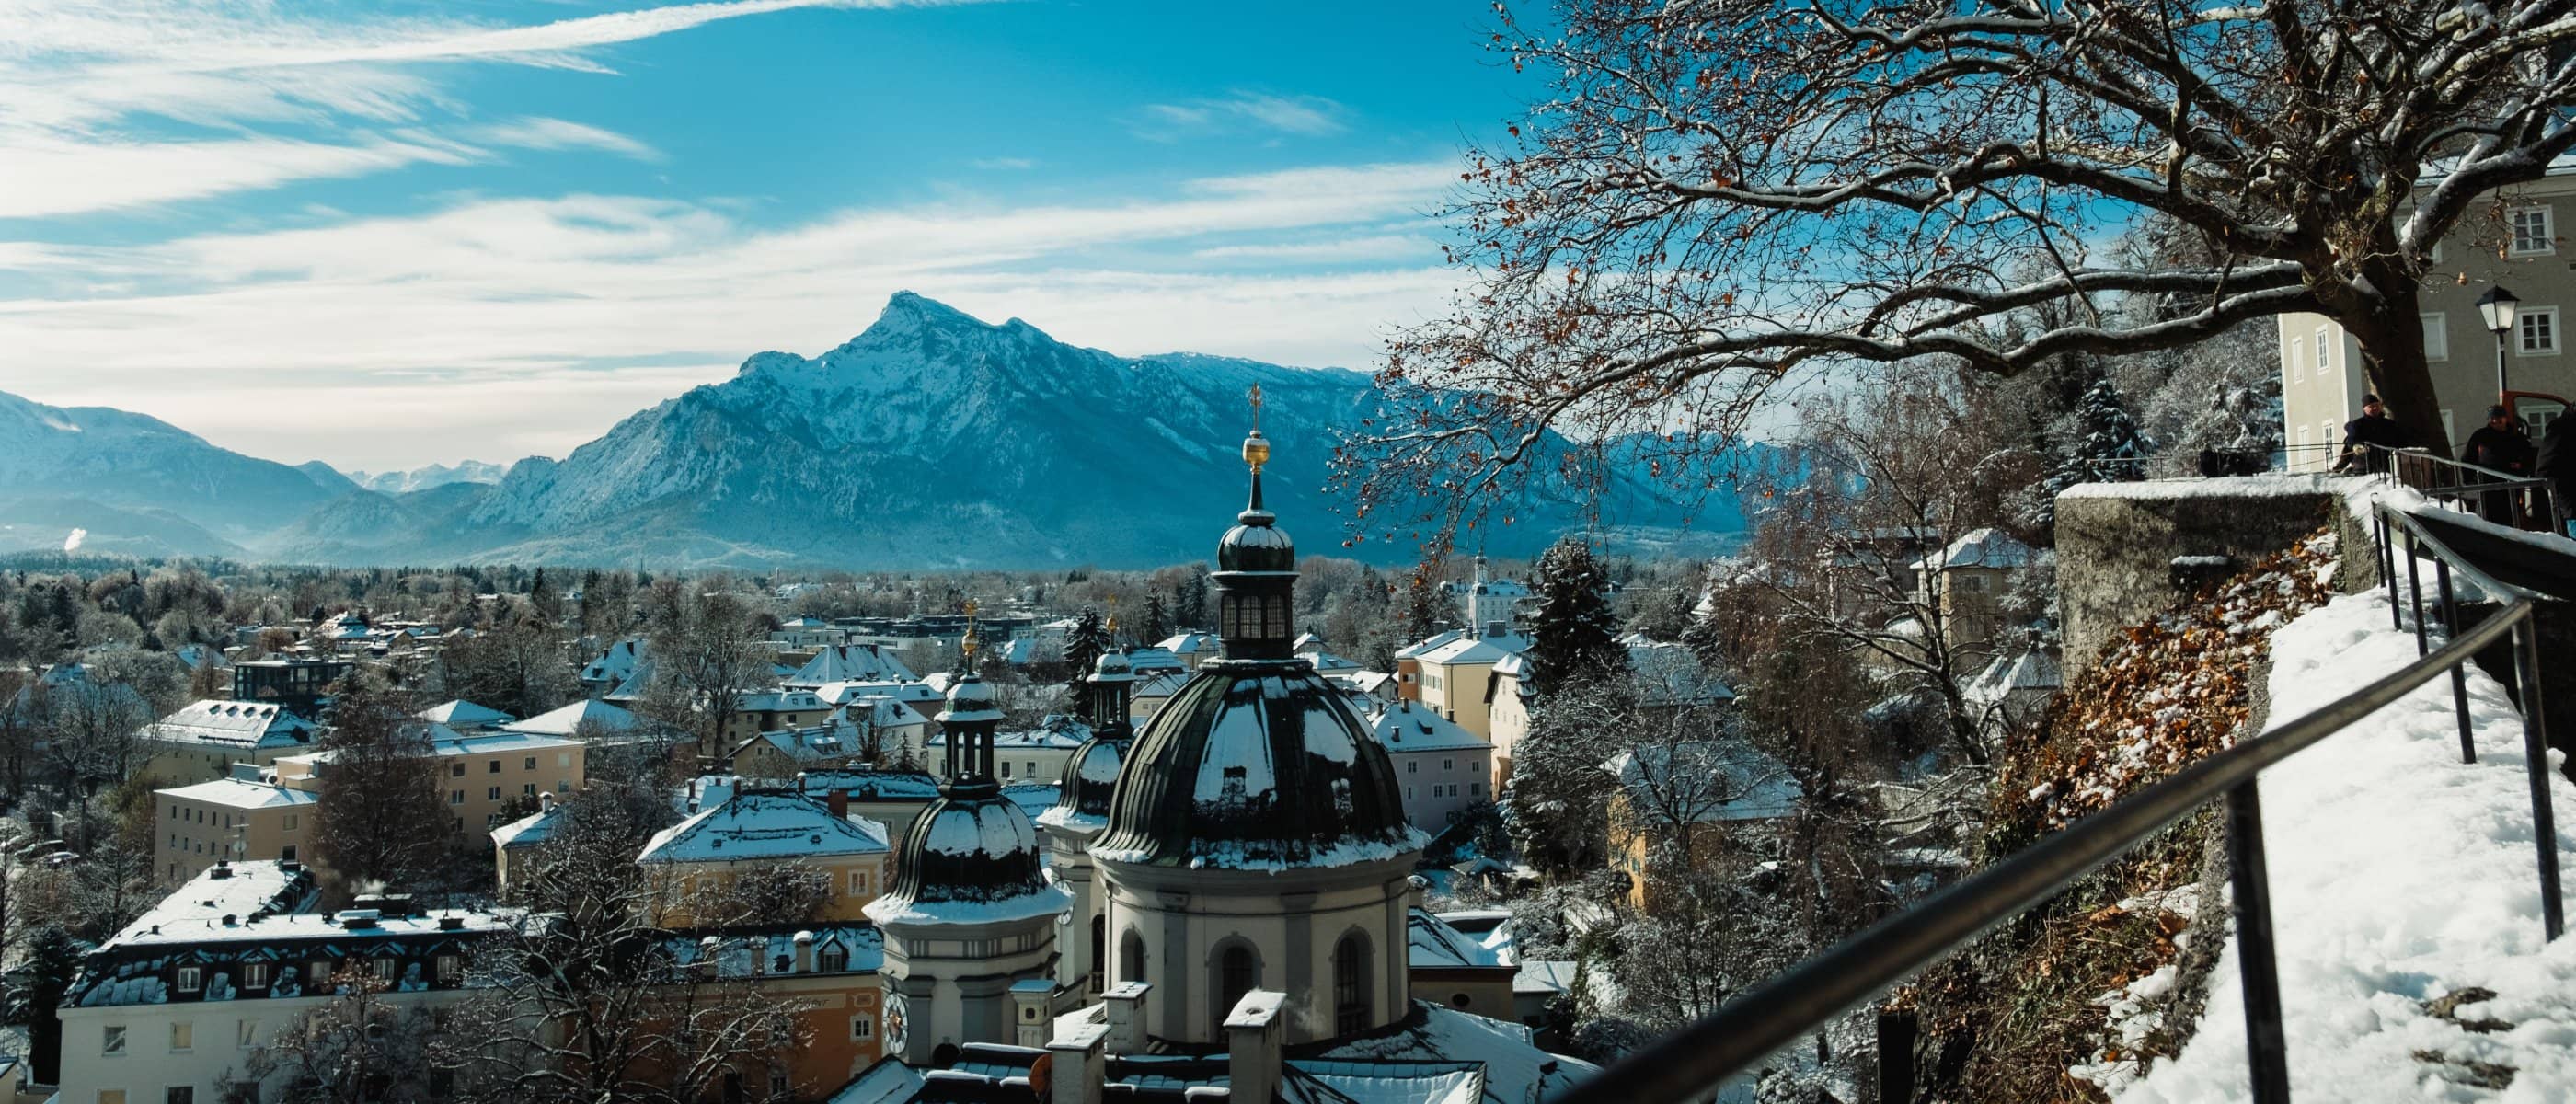 Dieses Bilder zeigt den Stadtteil Nonntal der Stadt Salzburg